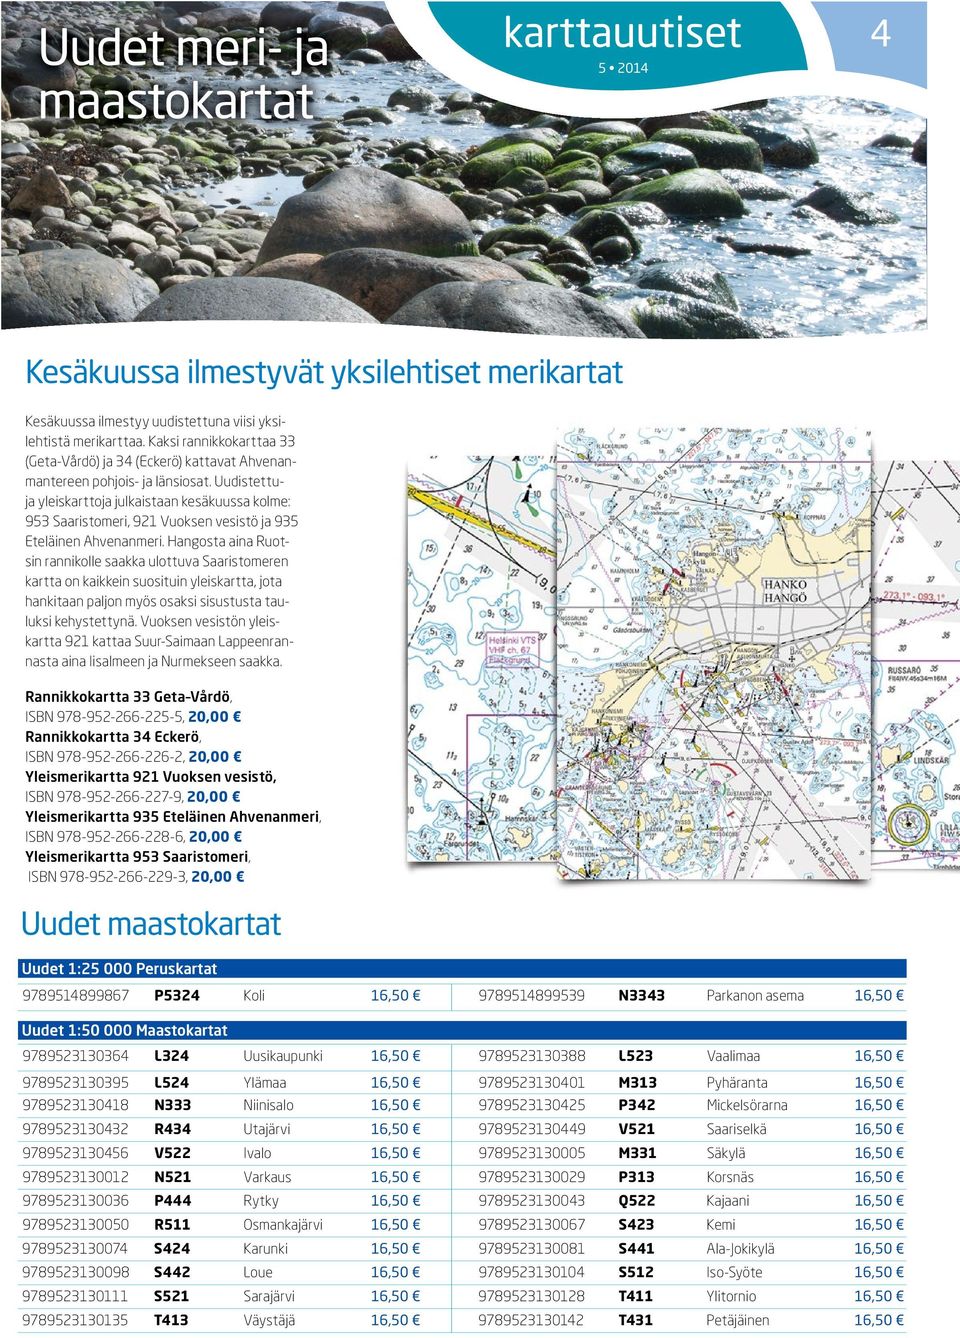 Uudistettuja yleiskarttoja julkaistaan kesäkuussa kolme: 953 Saaristomeri, 921 Vuoksen vesistö ja 935 Eteläinen Ahvenanmeri.